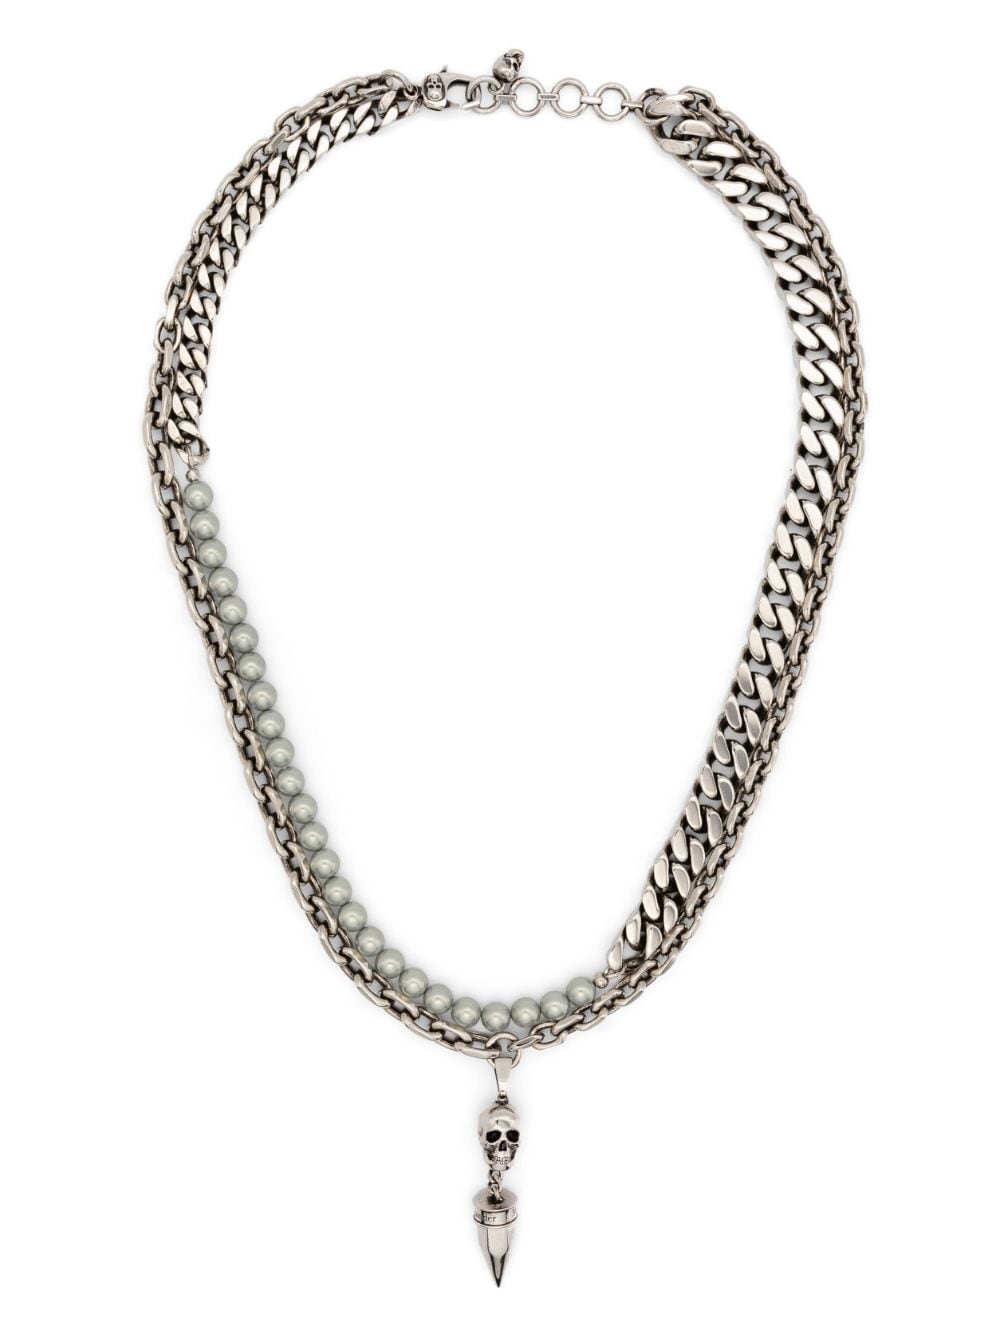 Alexander McQueen Skull Halskette mit Perlen - Silber von Alexander McQueen